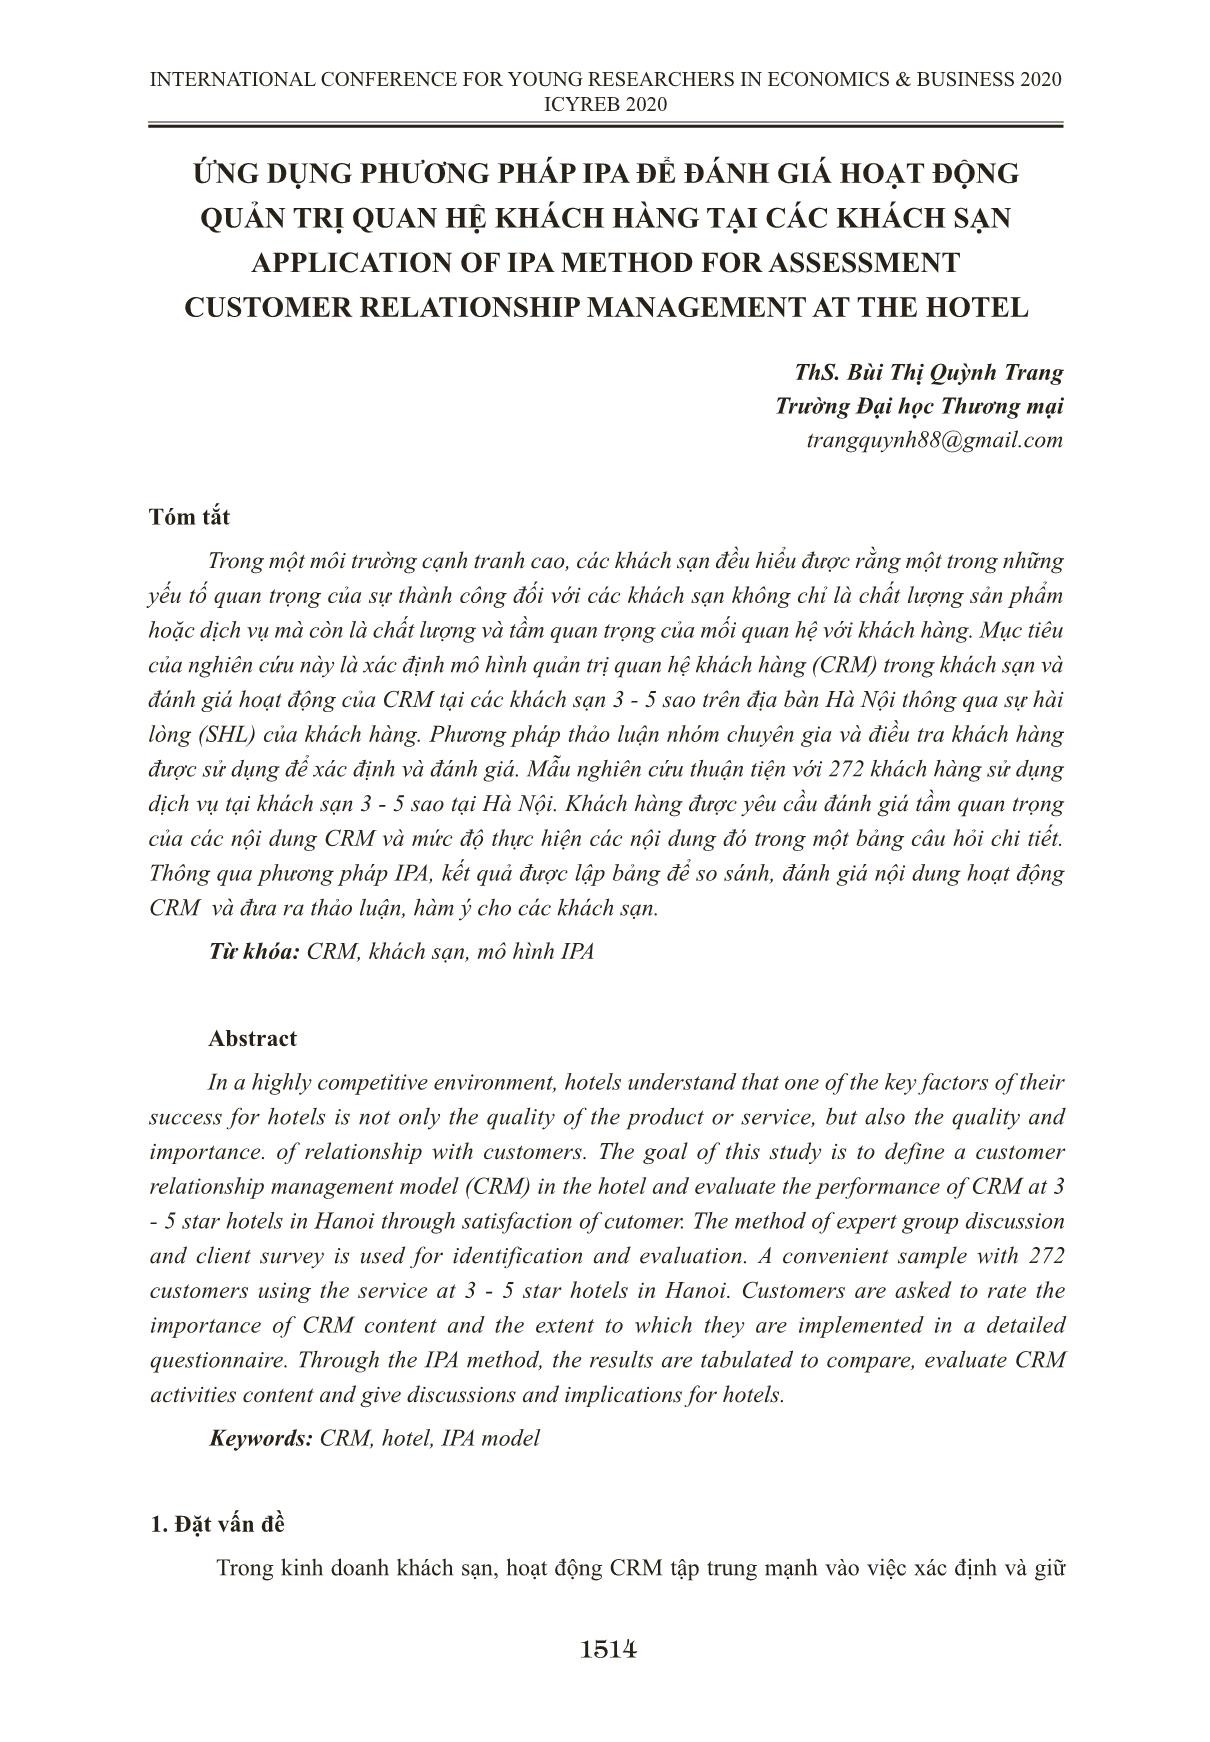 Ứng dụng phương pháp IPA để đánh giá hoạt động quản trị quan hệ khách hàng tại các khách sạn trang 1